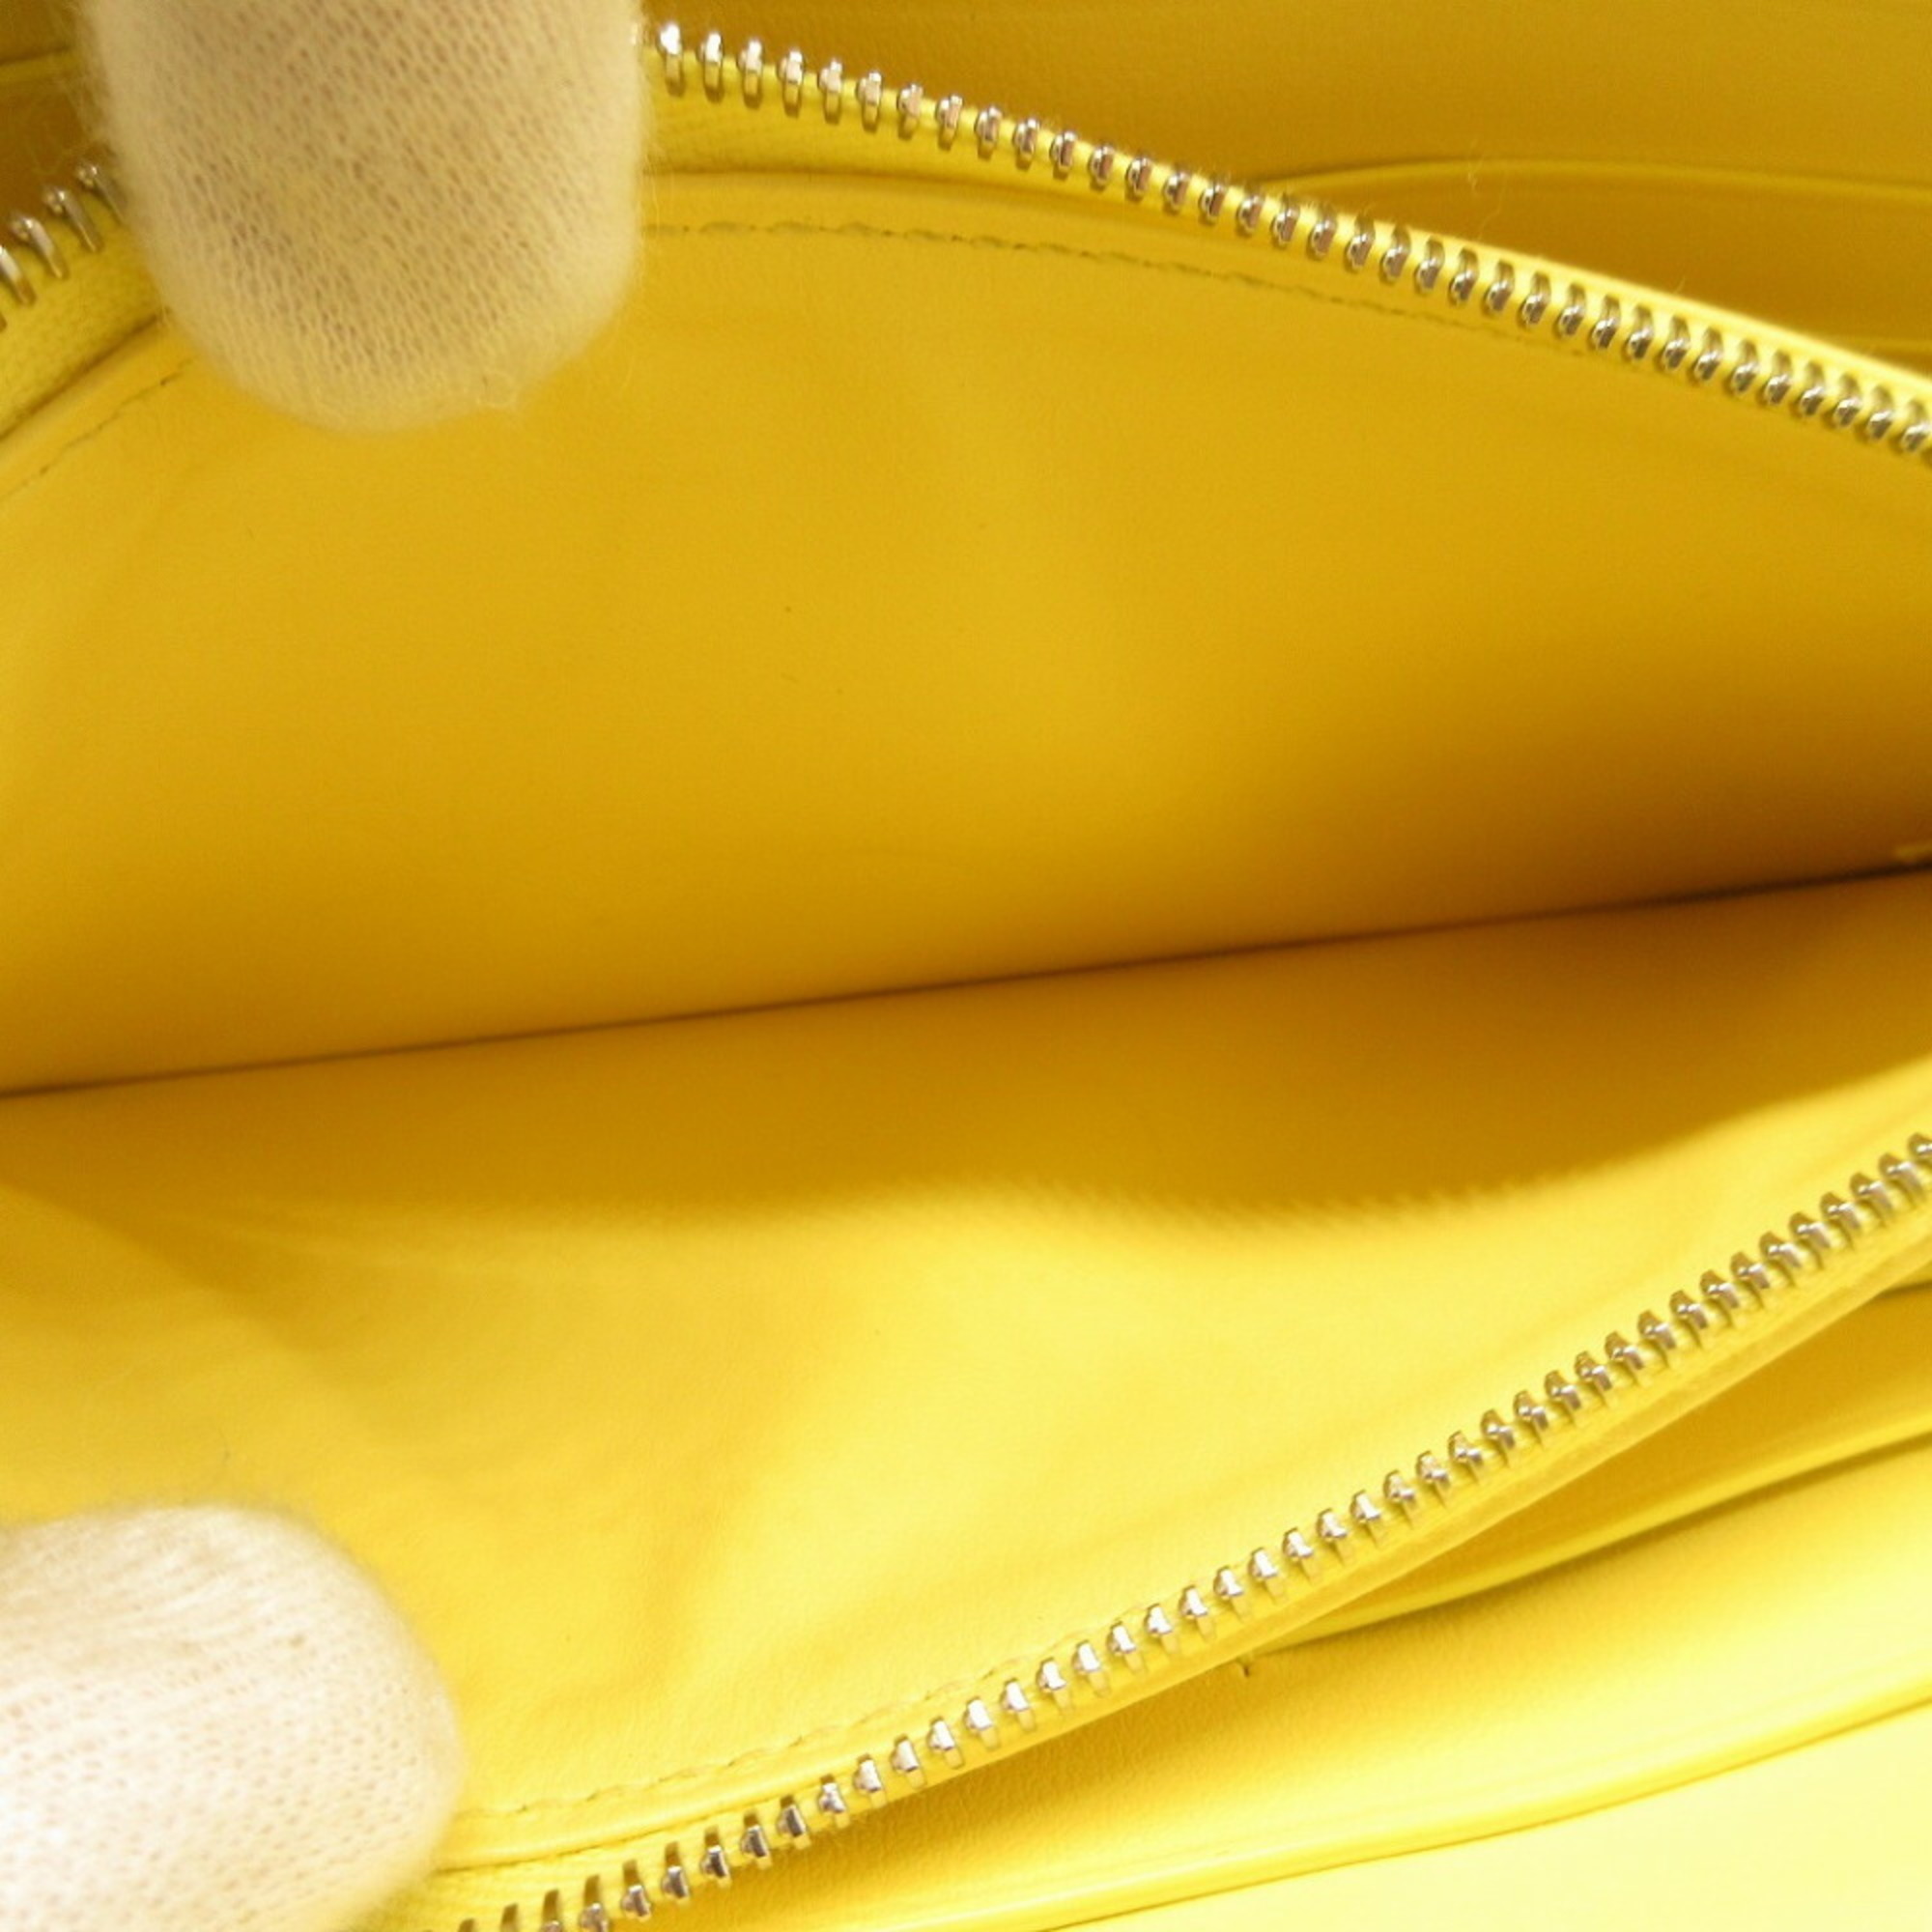 Bottega Veneta Maxi Intrecciato Leather Yellow Round Long Wallet